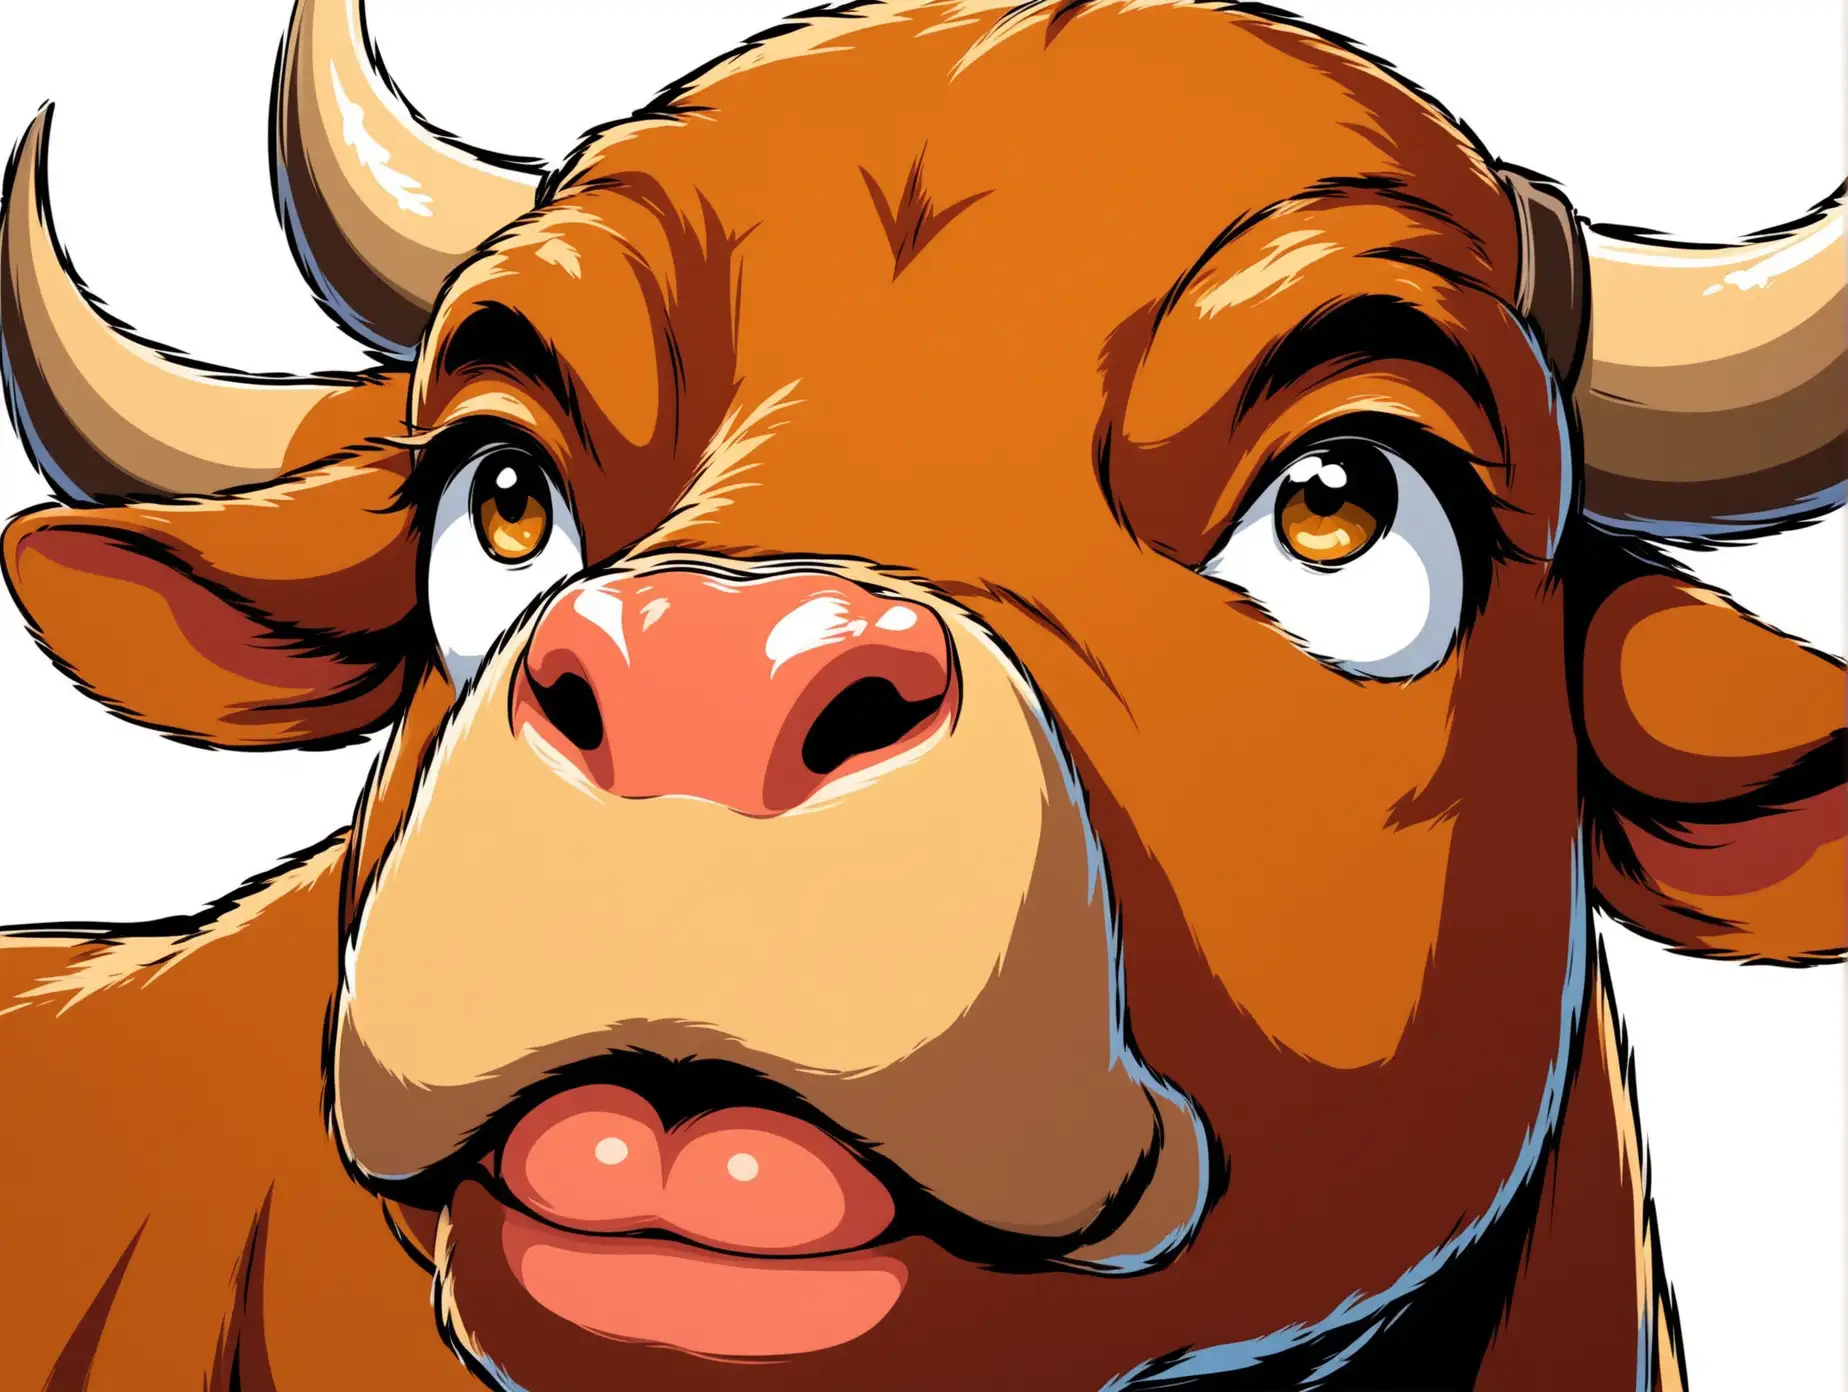 Cartoon Bull Nose and Mouth CloseUp